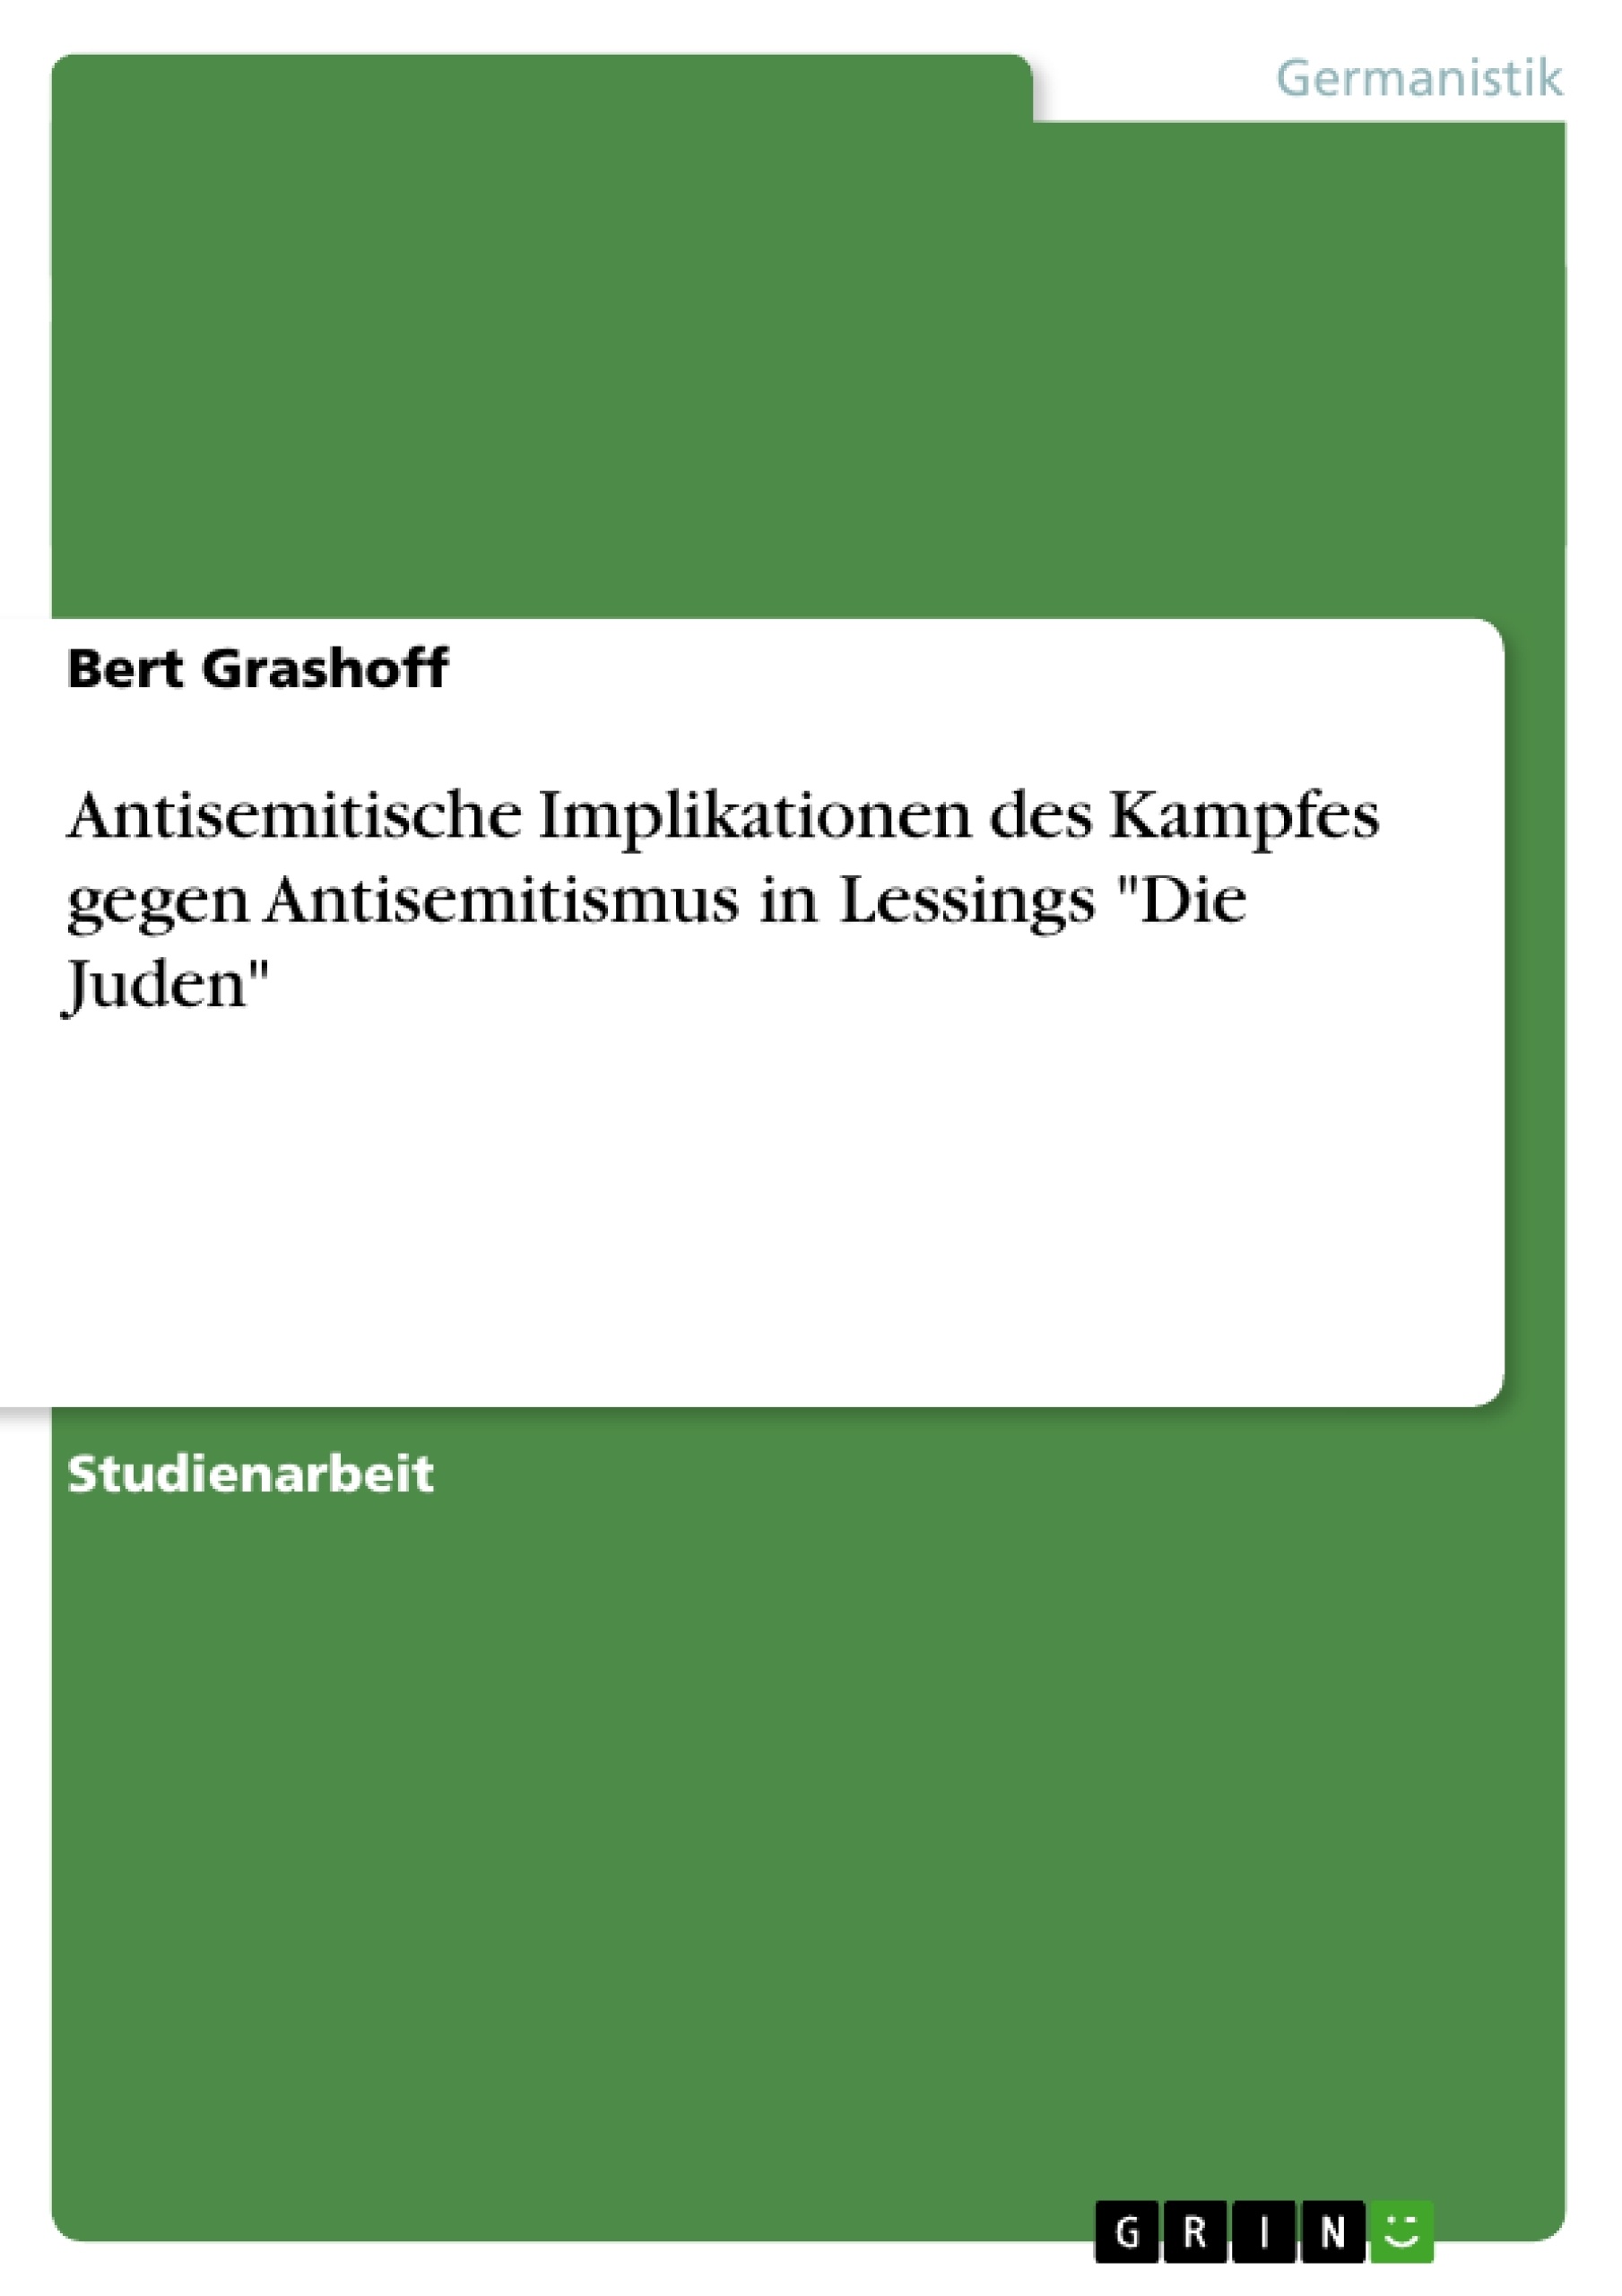 Titel: Antisemitische Implikationen des Kampfes gegen Antisemitismus in Lessings "Die Juden"